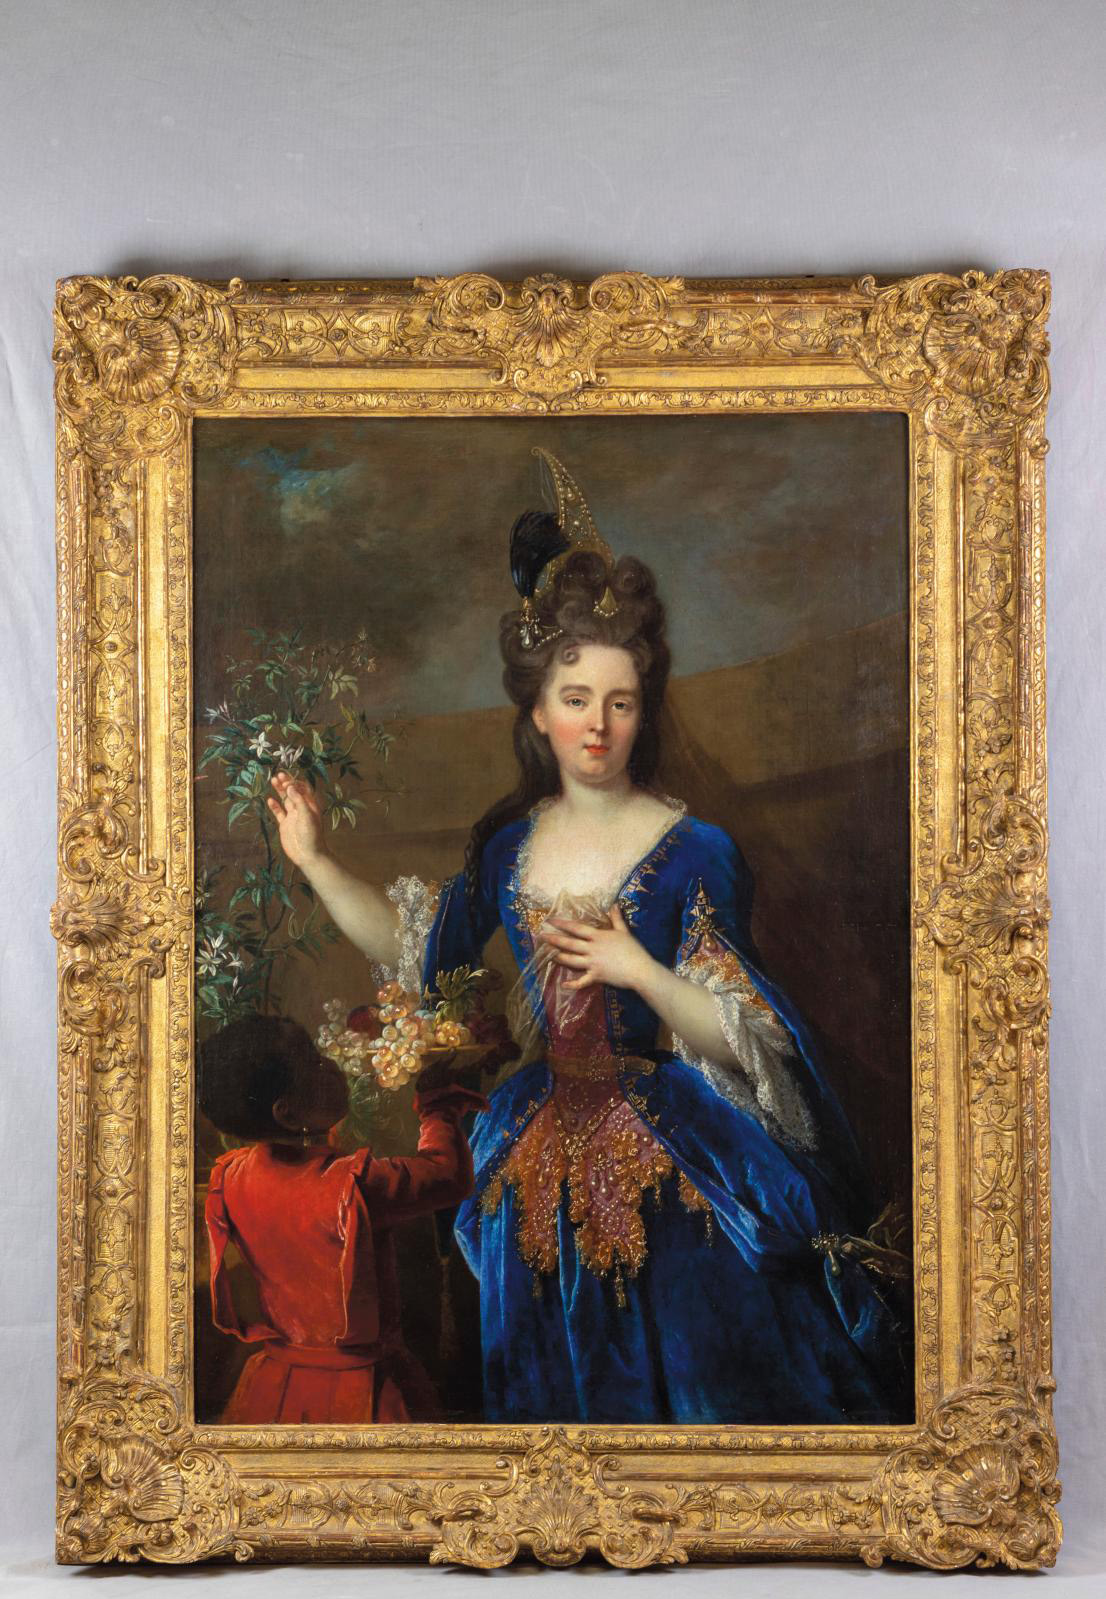 Lady with Jasmine: Portrait of a Young Aristocrat by Nicolas de Largillière